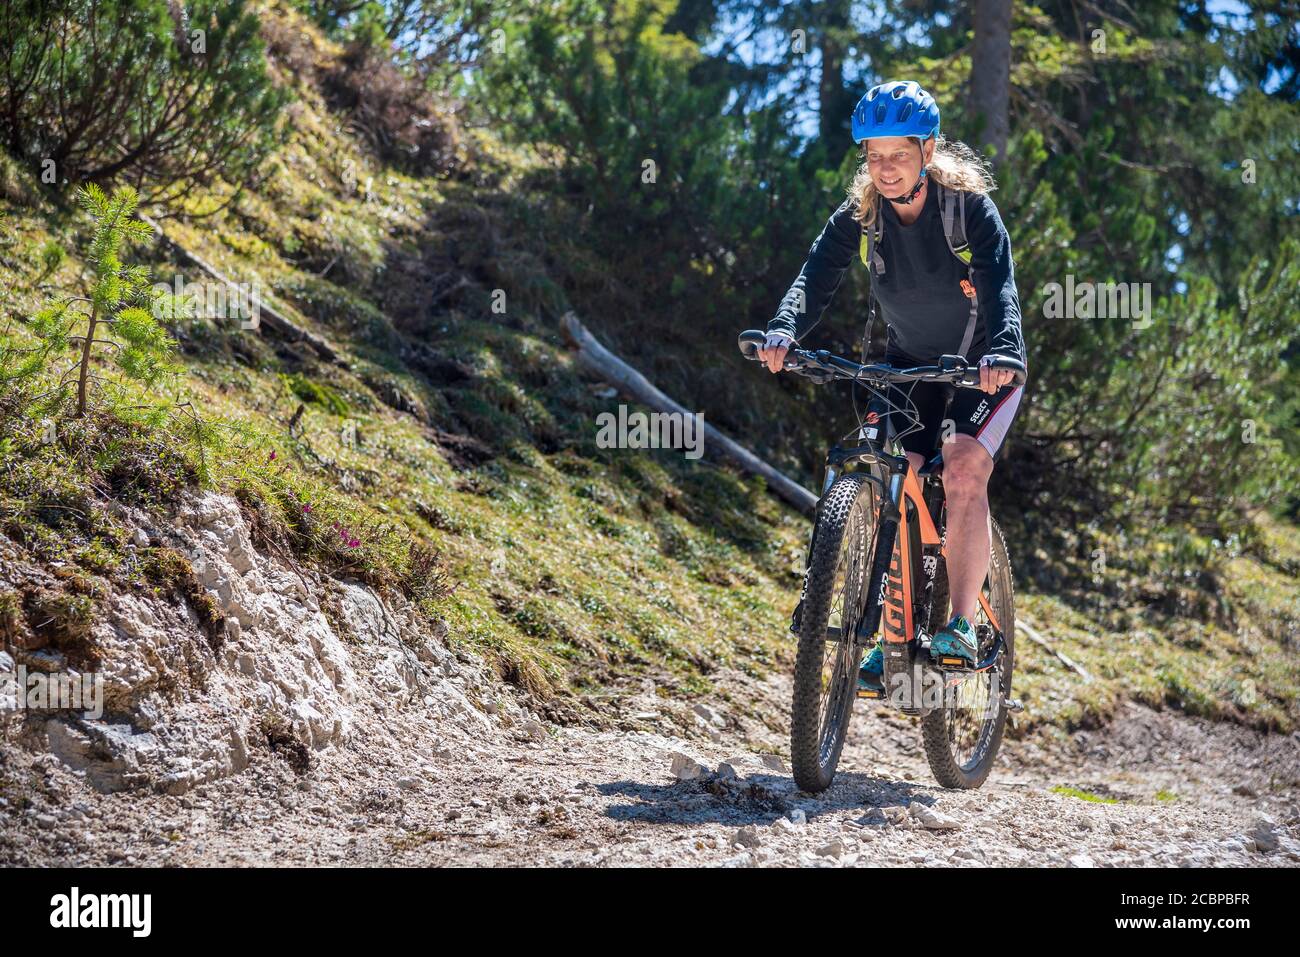 Des motards de montagne se promènent avec eMTB sur une piste de charrette en amont de la forêt de montagne, les montagnes de Rofan, Steinberg am Rofan, Tyrol, Autriche Banque D'Images